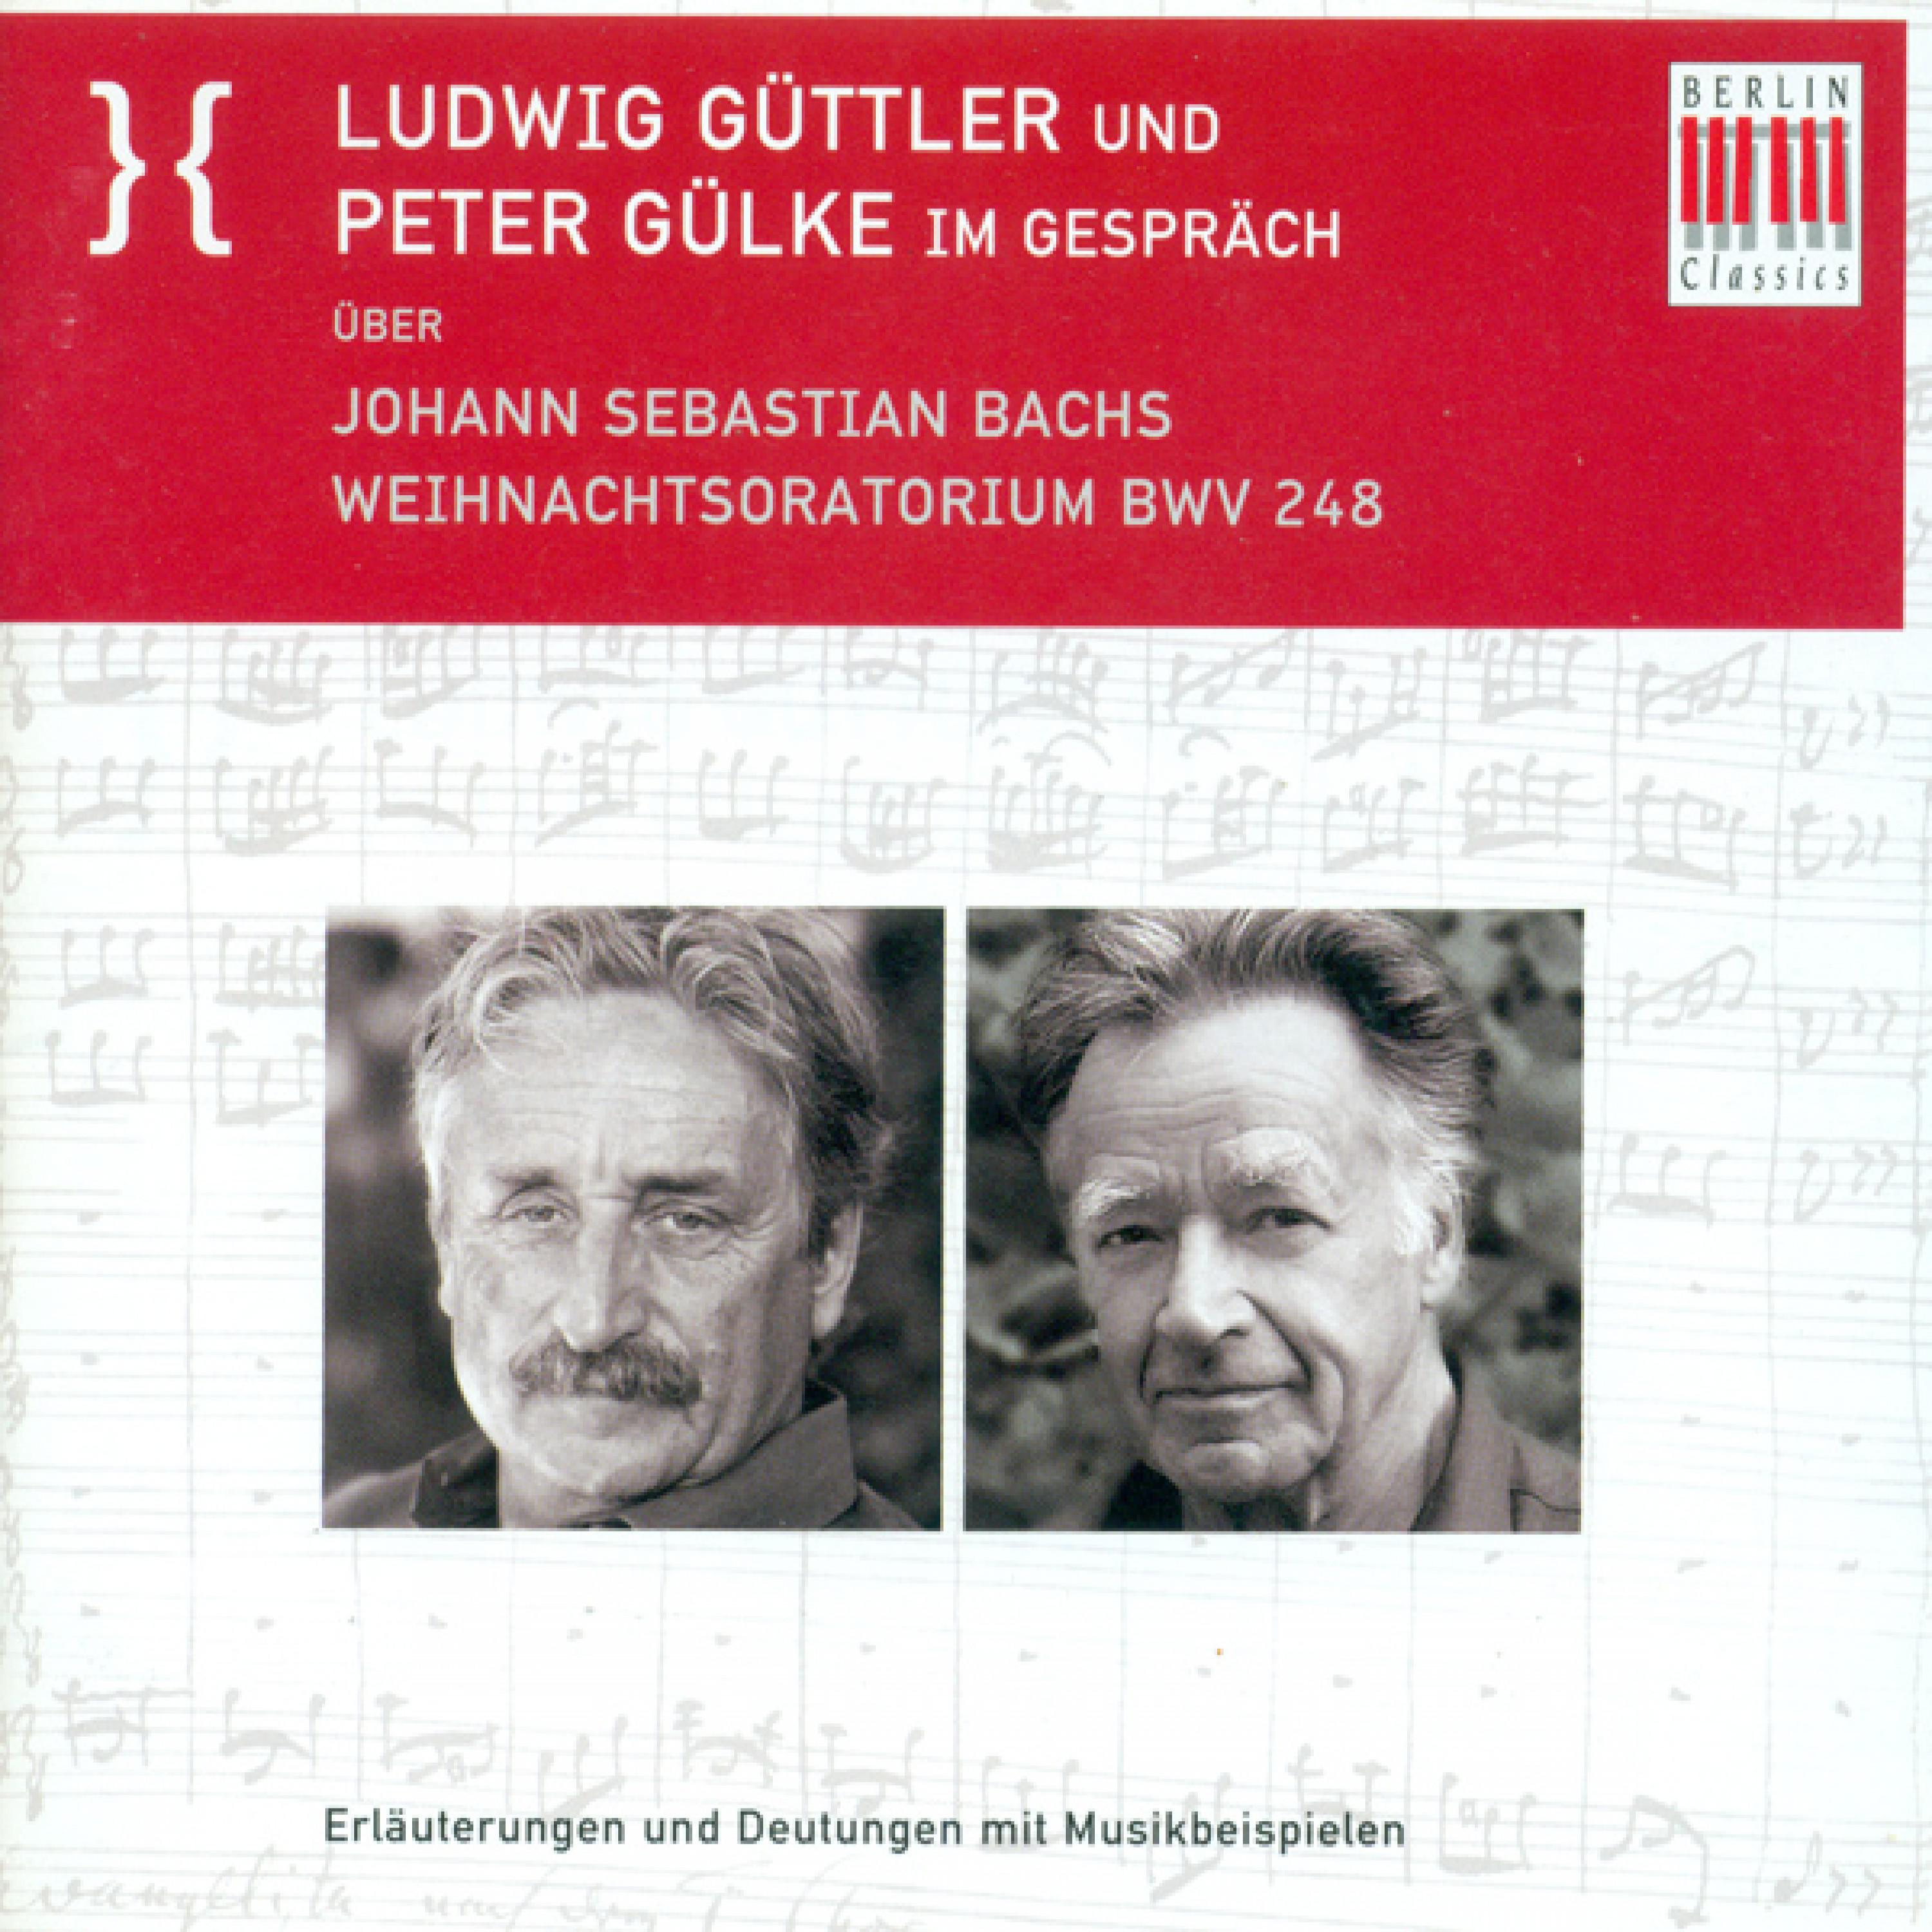 Ludwig Guttler und Peter Gulke Im Gesprach uber Johann Sebastian Bach's Weihnachtsoratorium BWV 248: Wo Bach von sich spricht